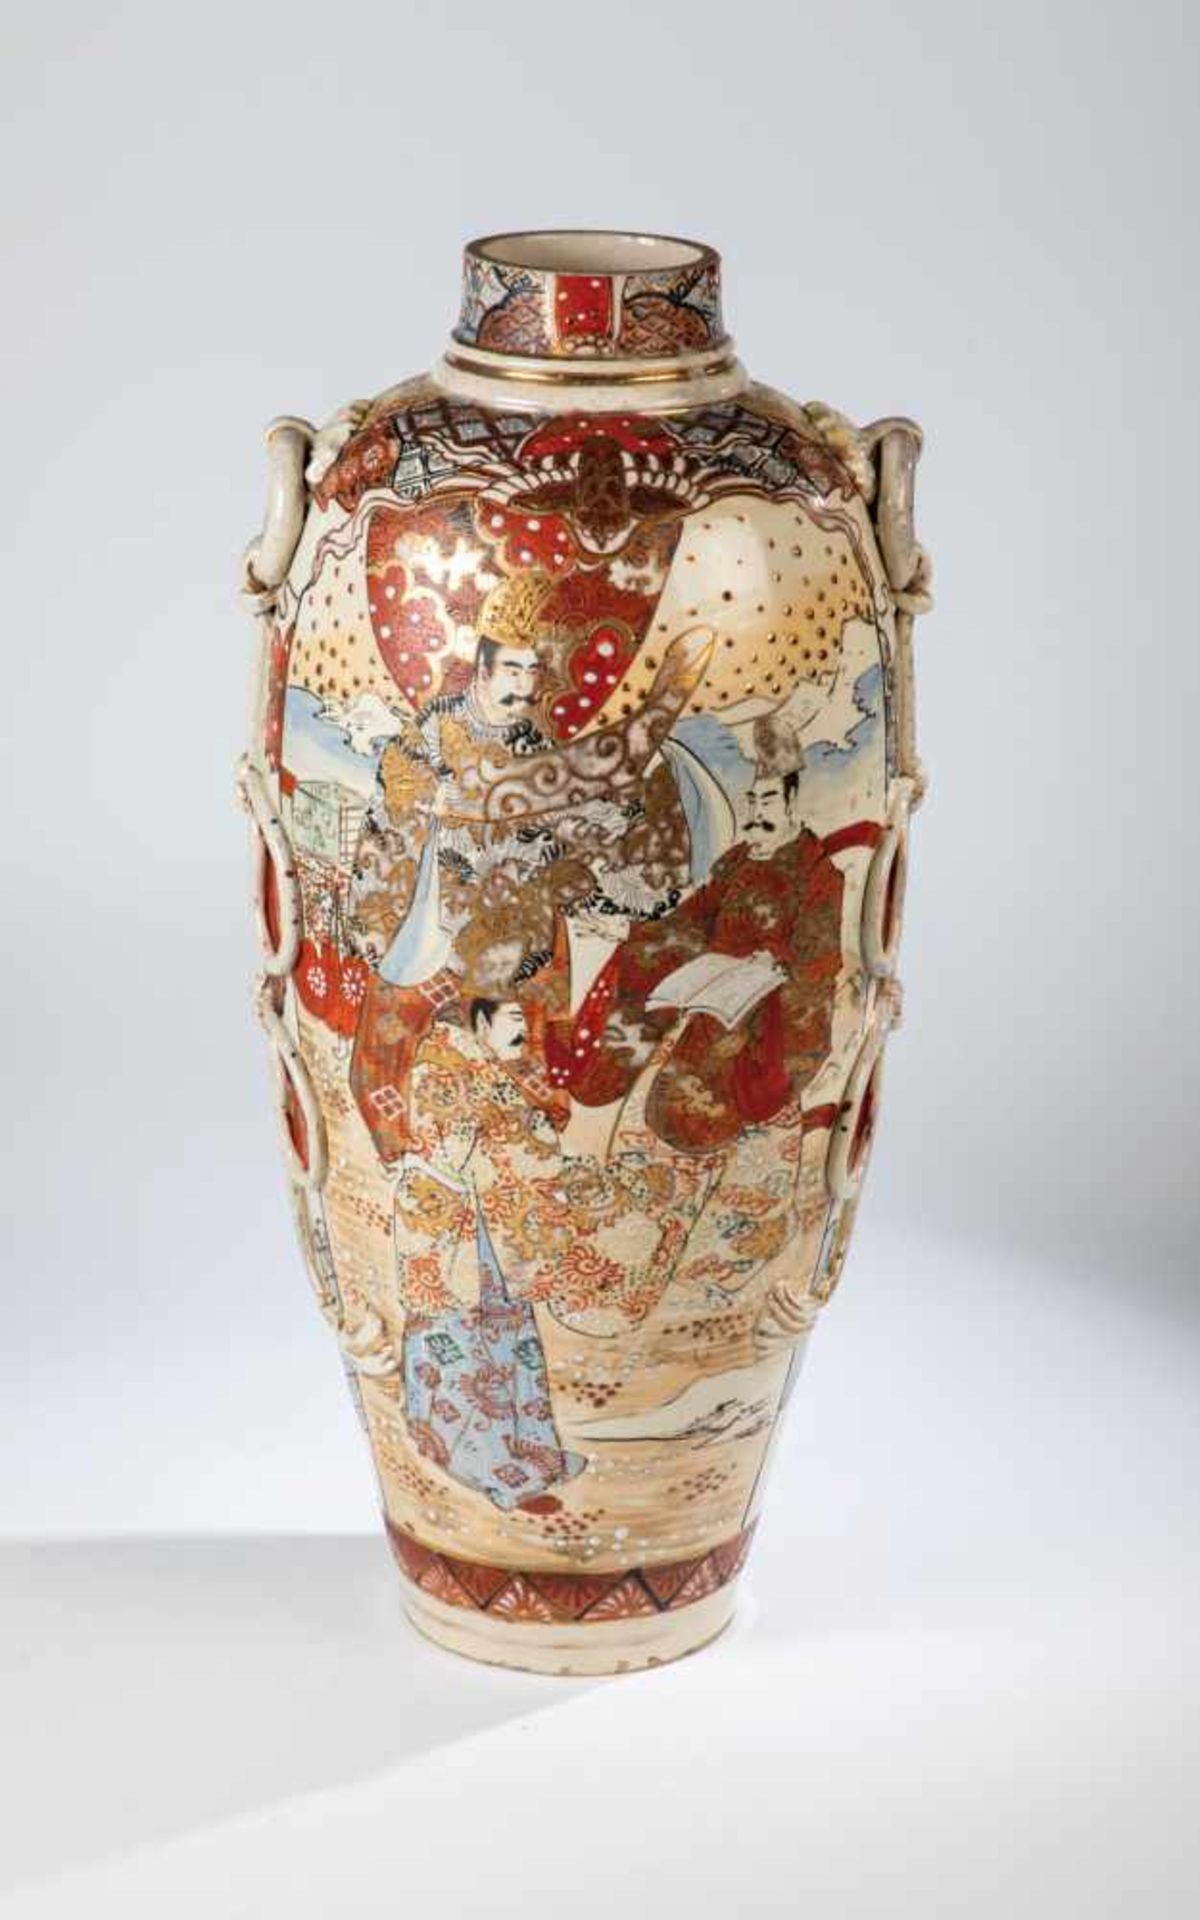 Satsuma vase. Japan, Meiji period, 19th century. Large vase with polychrome depiction oftwo